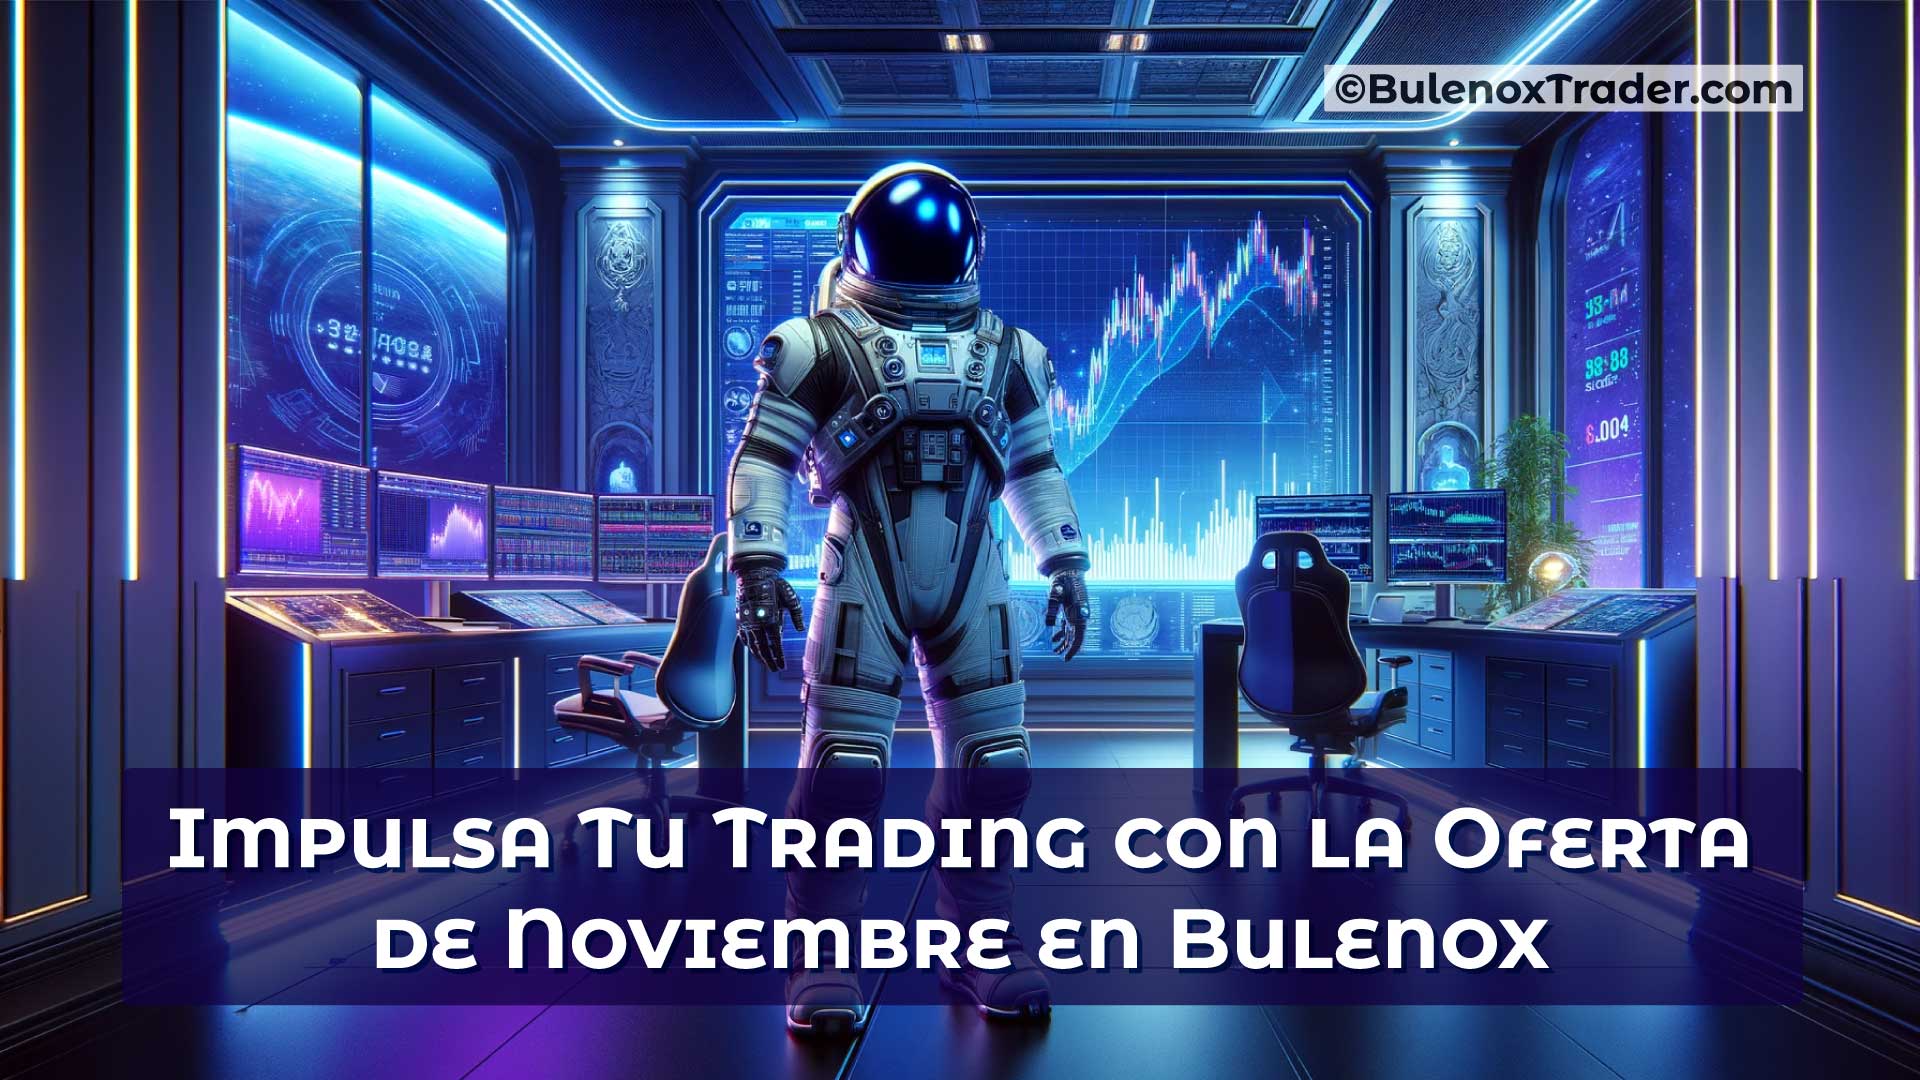 Impulsa-Tu-Trading-con-la-Oferta-de-Noviembre-en-Bulenox-on-Bulenox-Trader-Website